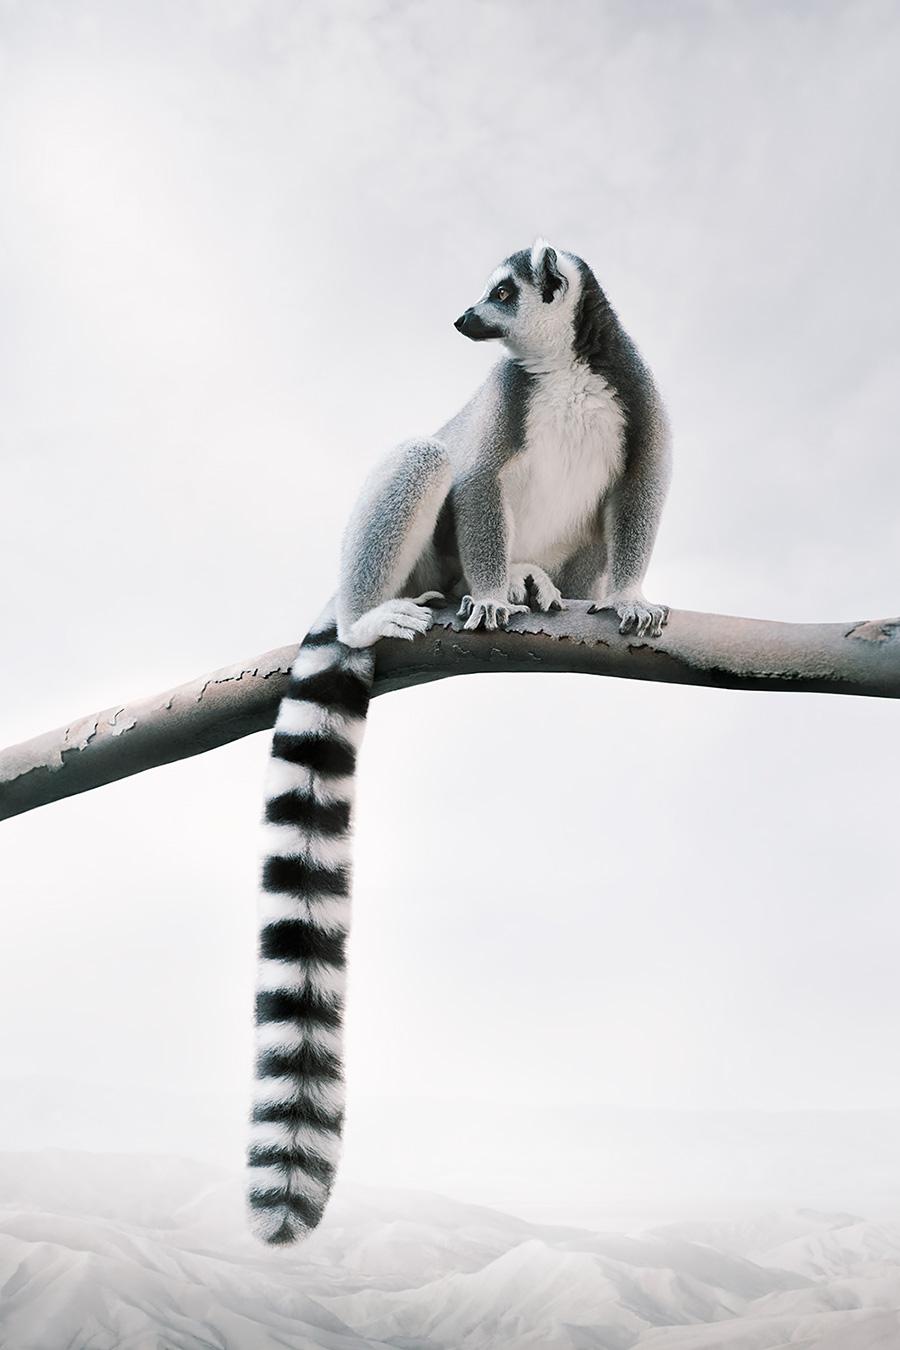 Gelassener Lemur
Serie: Meditationen
Fotobasierte Malerei auf Canson Infinity Rag Photographique

Verfügbare Größen
30 x 27 Zoll     Auflage von 15
40 x 27 Zoll     Auflage von 12
60 x 40 Zoll     Auflage von 10 Stück

In dieser Serie schafft